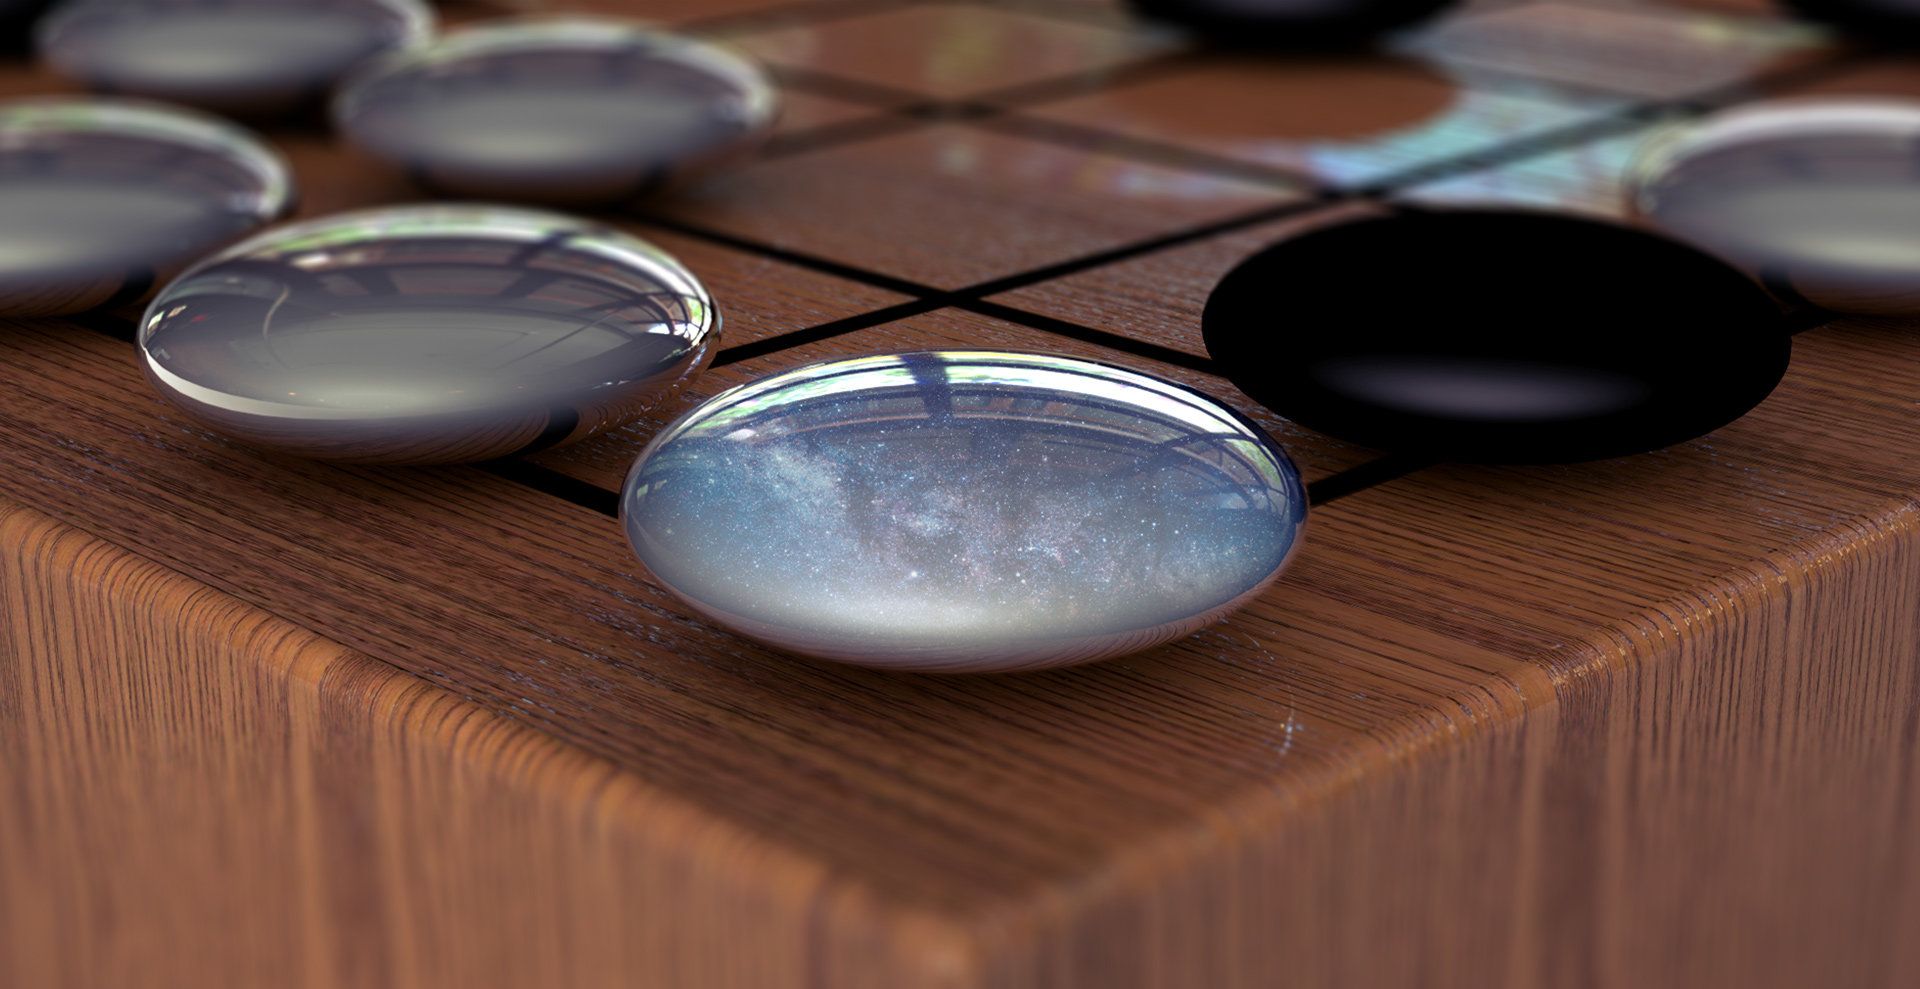 La inteligencia artificial AlphaGo se ha vuelto completamente самообучаемым